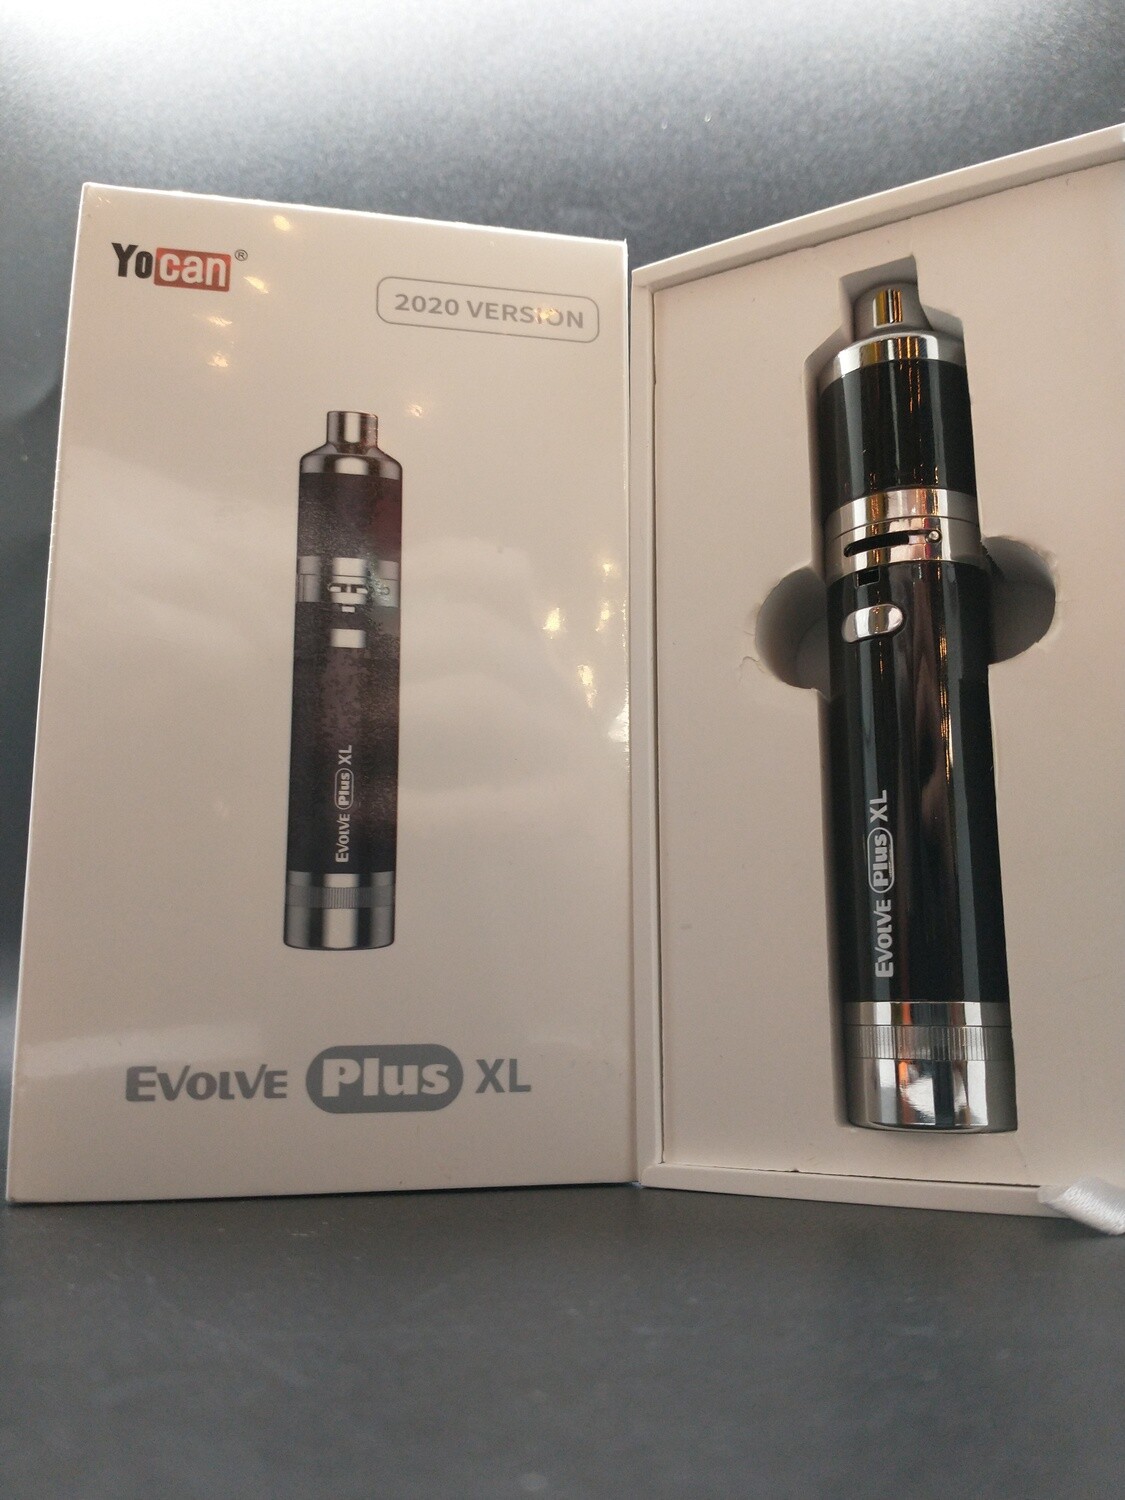 Yocan Evolve Plus XL 1400mAh Vaporizer Kit Black